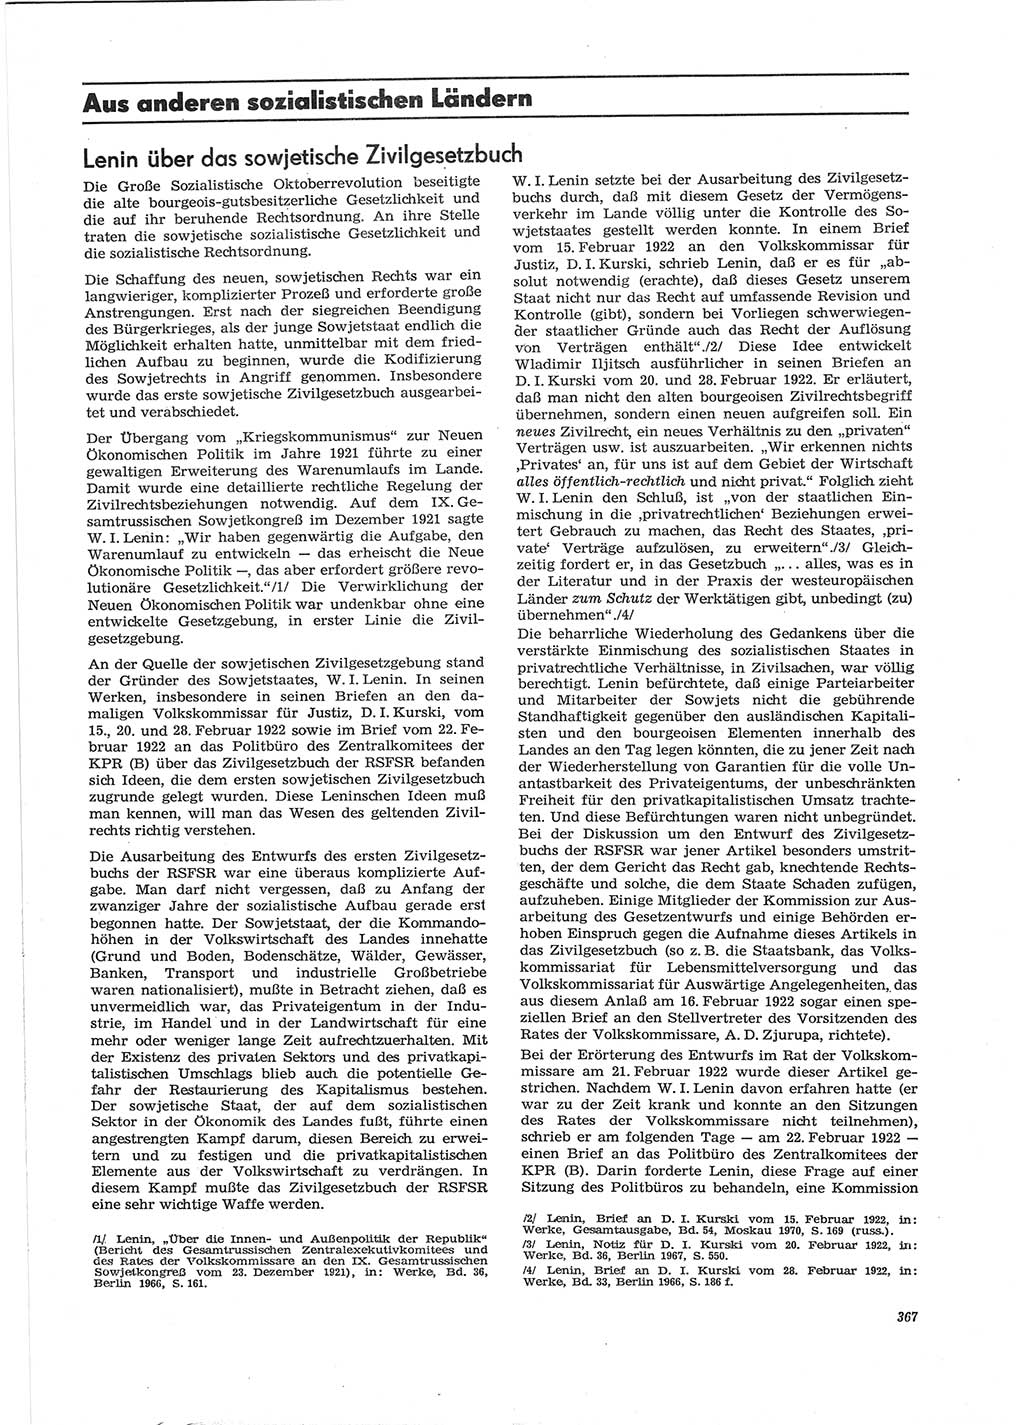 Neue Justiz (NJ), Zeitschrift für Recht und Rechtswissenschaft [Deutsche Demokratische Republik (DDR)], 28. Jahrgang 1974, Seite 367 (NJ DDR 1974, S. 367)